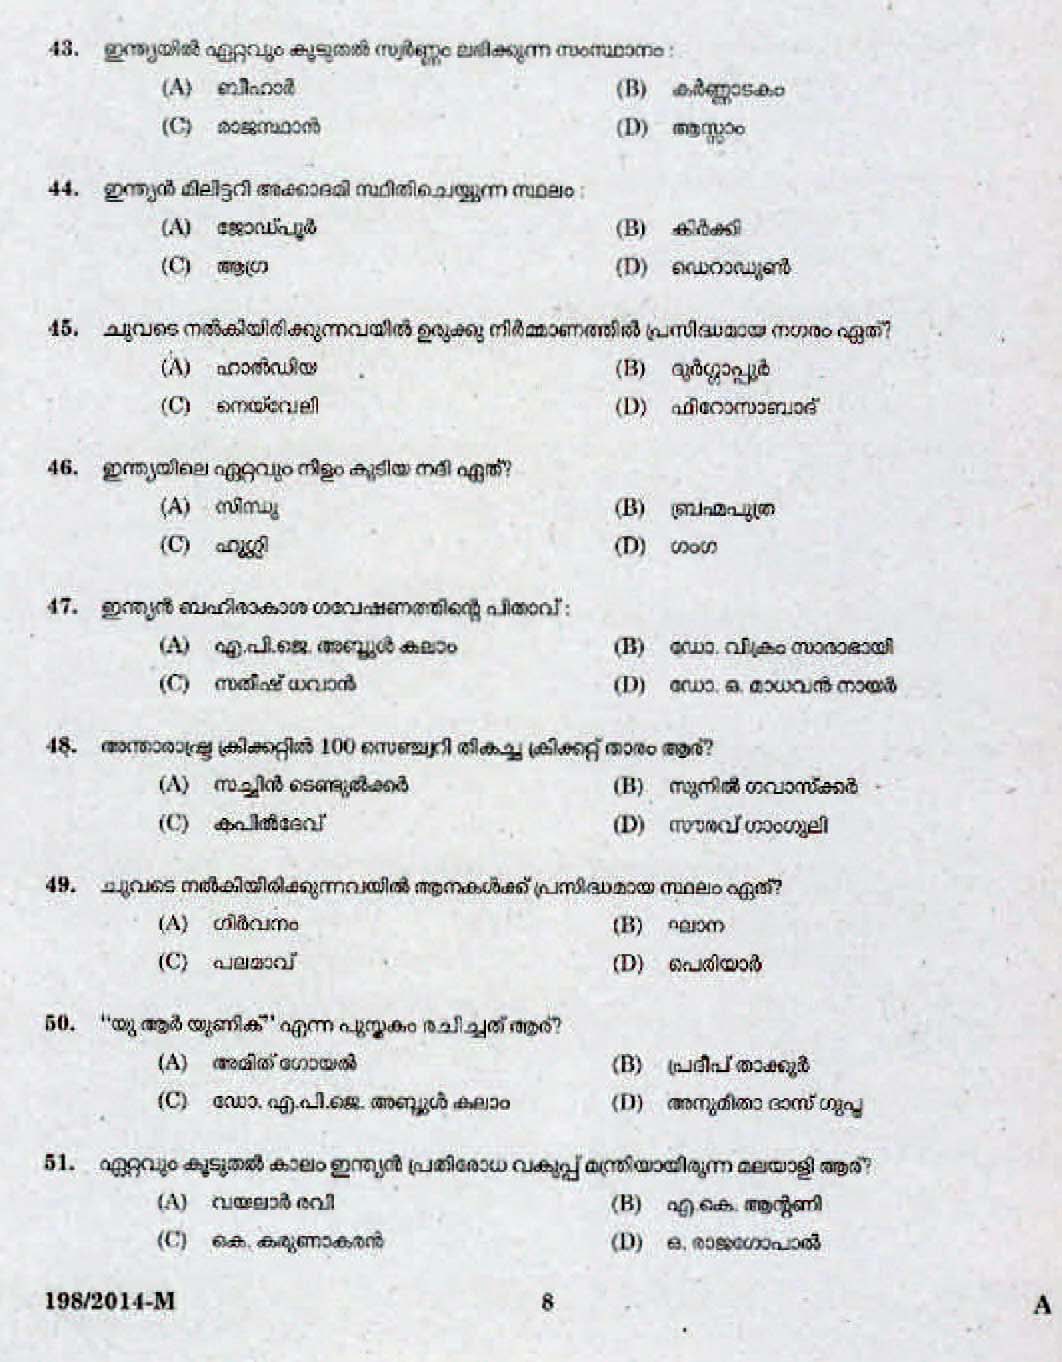 Kerala Last Grade Servants Exam 2014 Question Paper Code 1982014 M 6